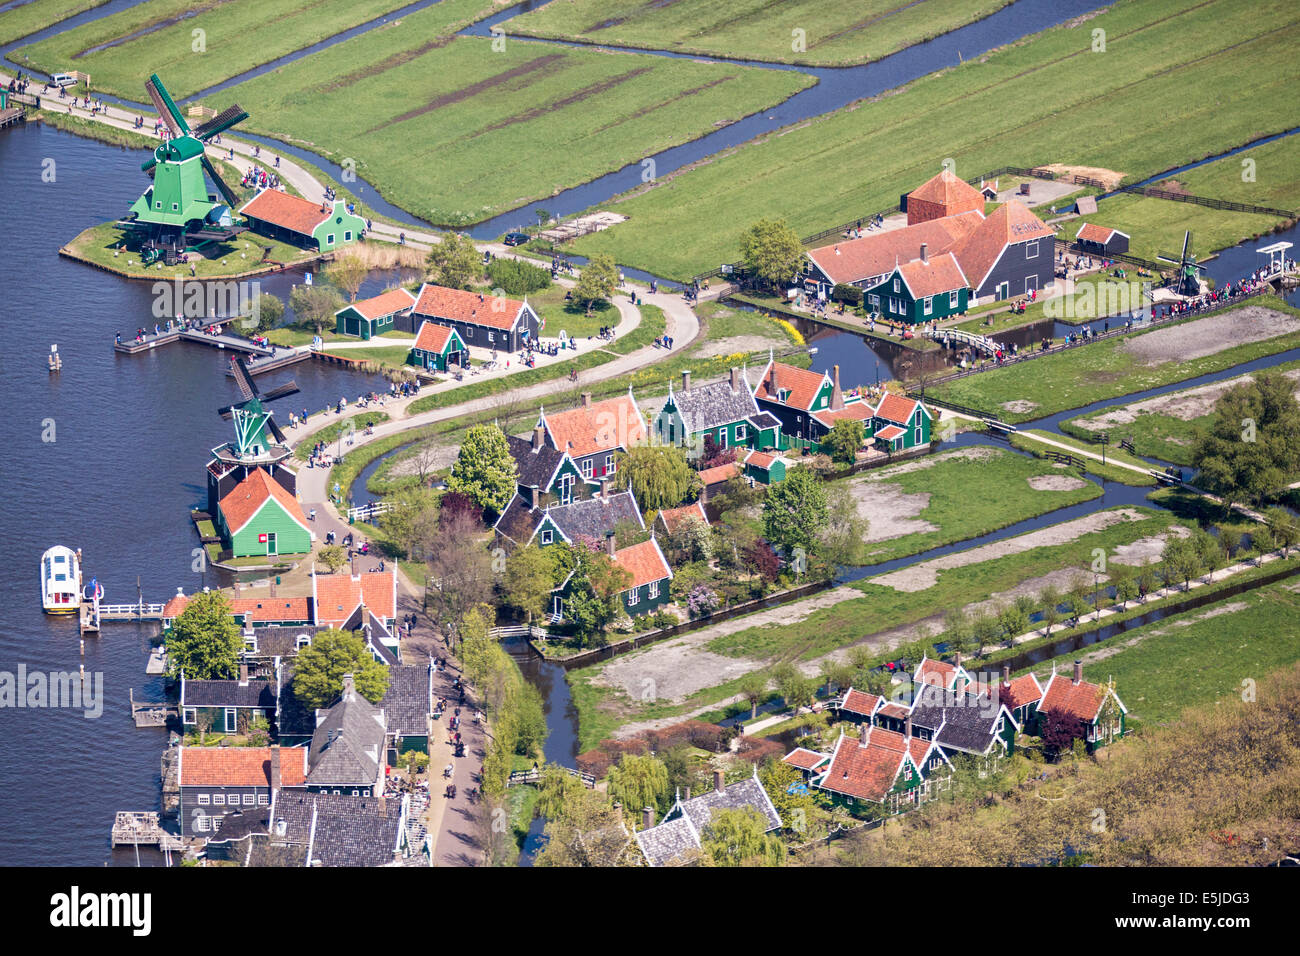 Los Países Bajos, Zaanse Schans. El museo tiene una colección de bien conservado casco histórico de molinos de viento y casas. Antena Foto de stock